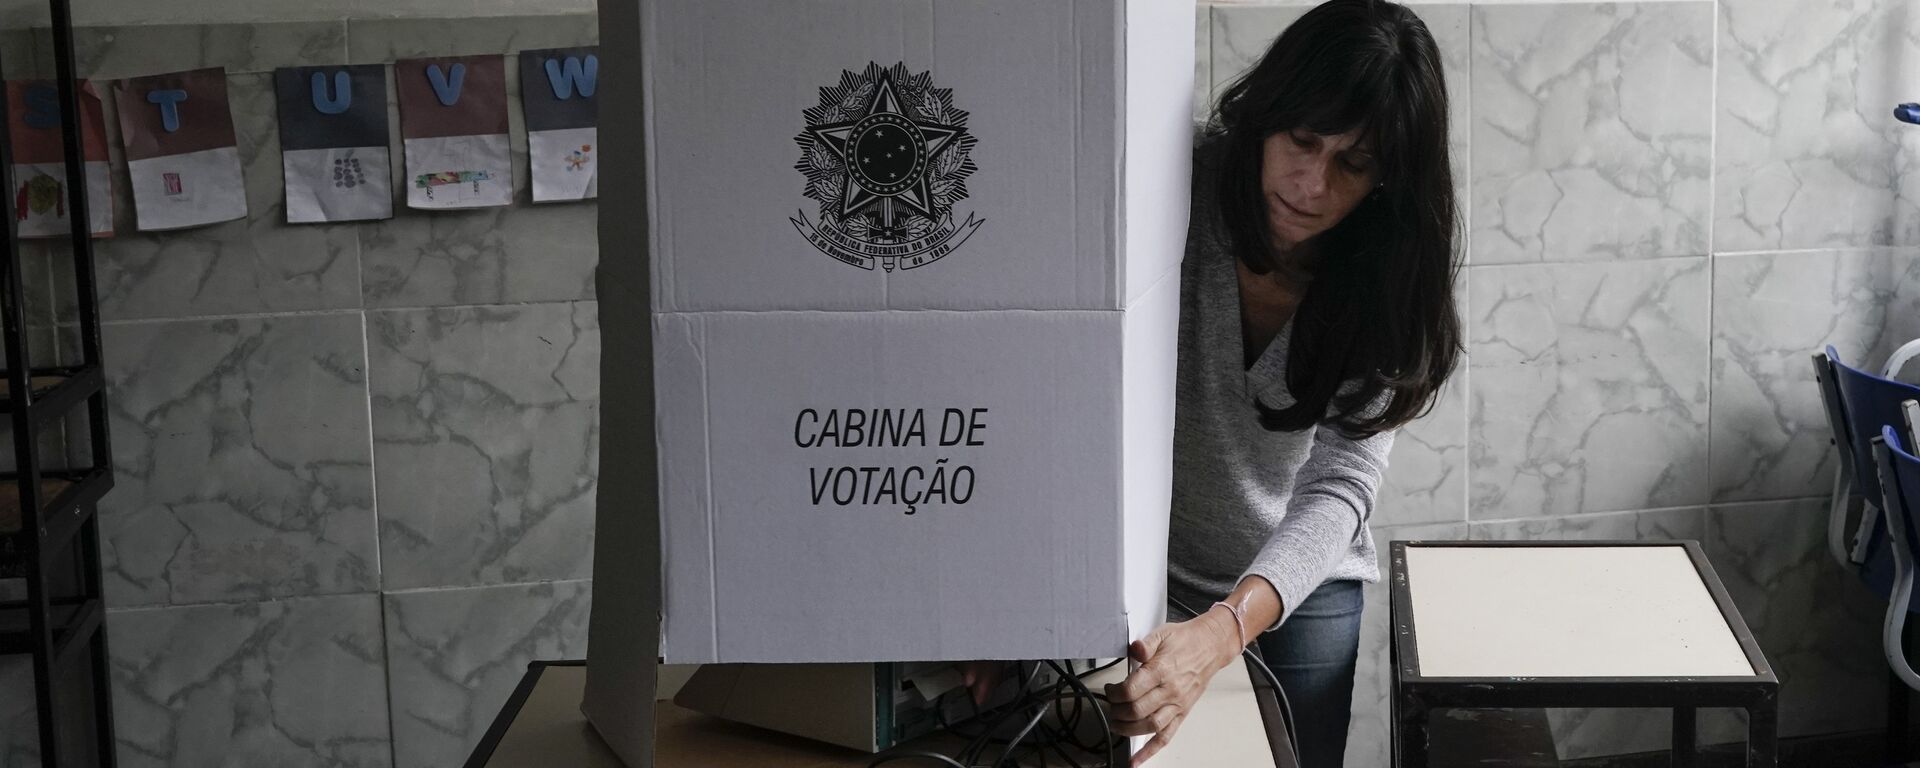 Elecciones presidenciales en Brasil - Sputnik Mundo, 1920, 24.06.2022